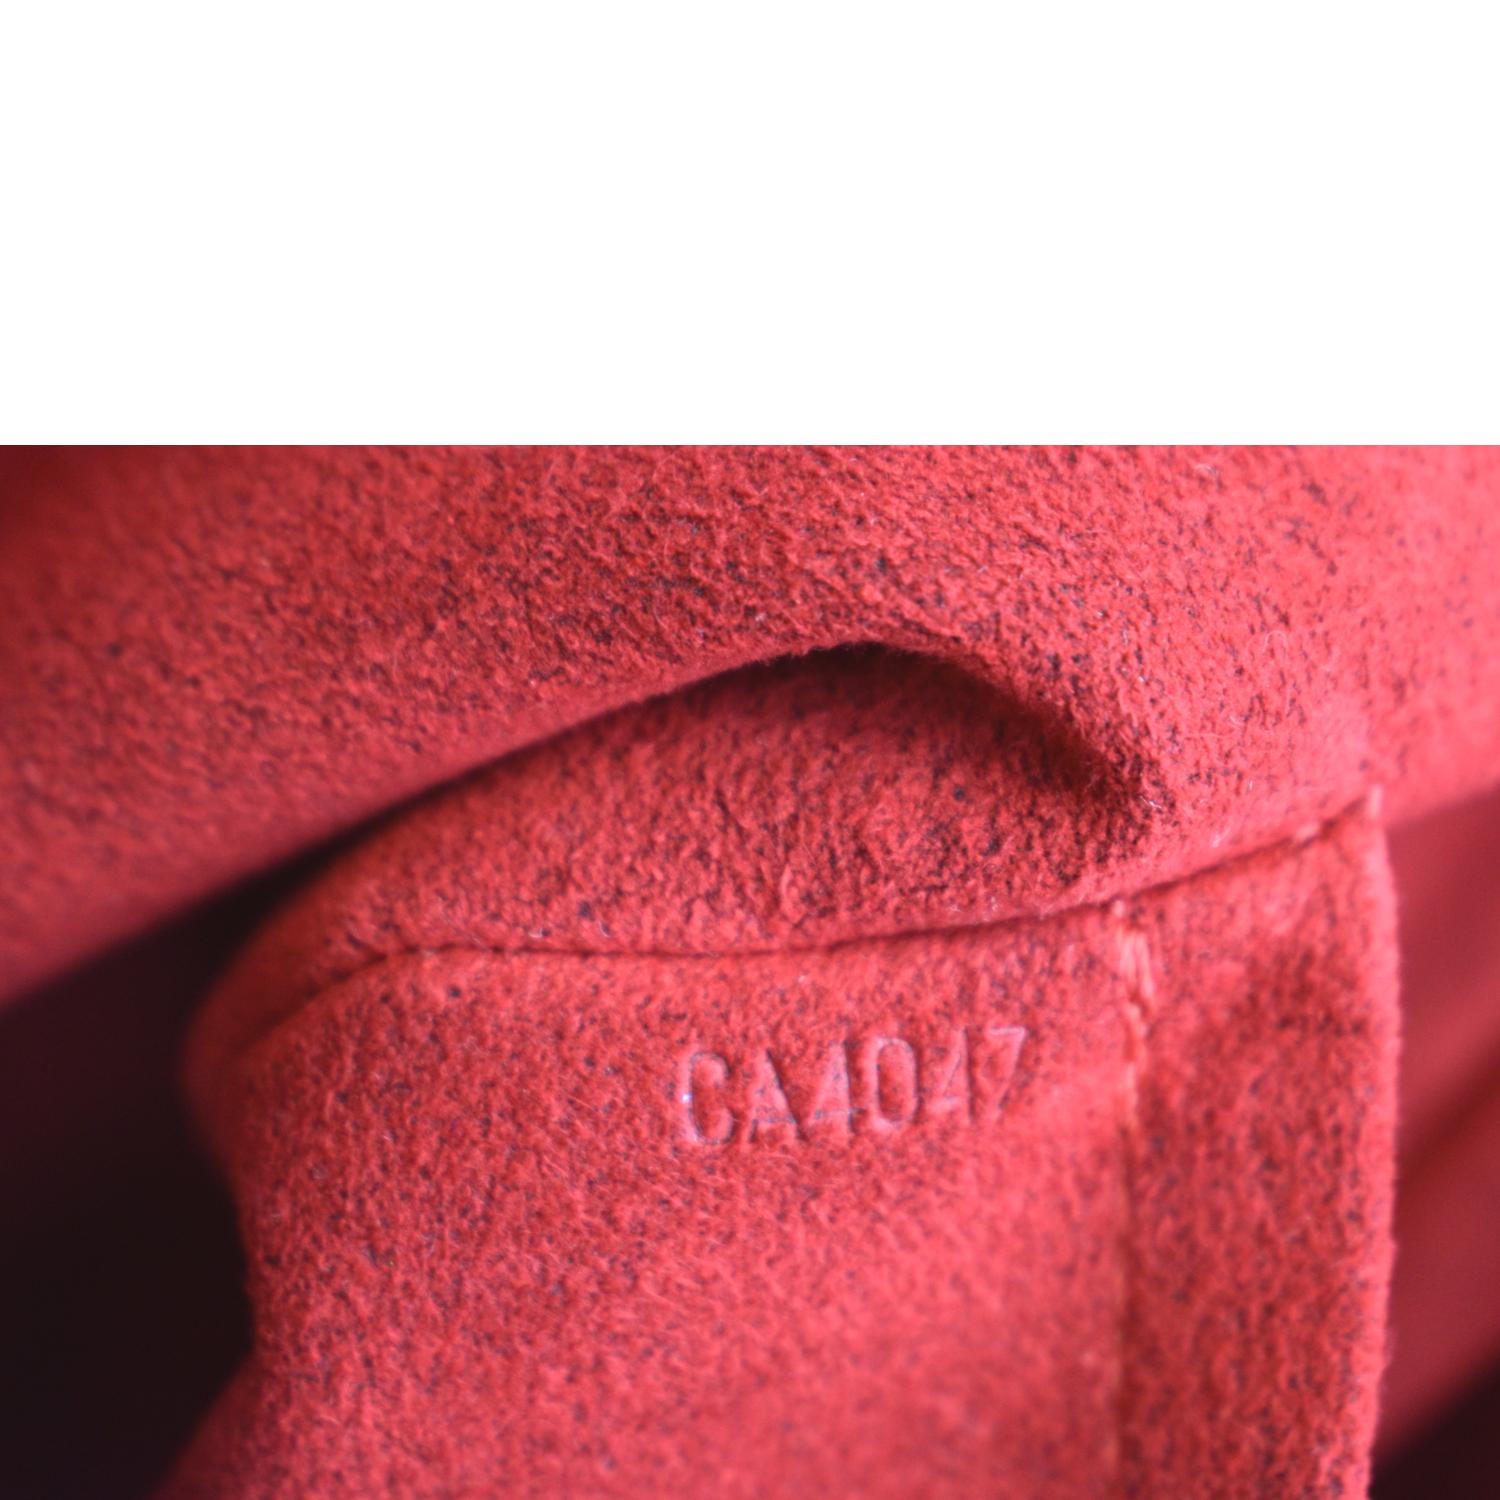 Louis Vuitton Damier Ebene Griet - Brown Totes, Handbags - LOU780017